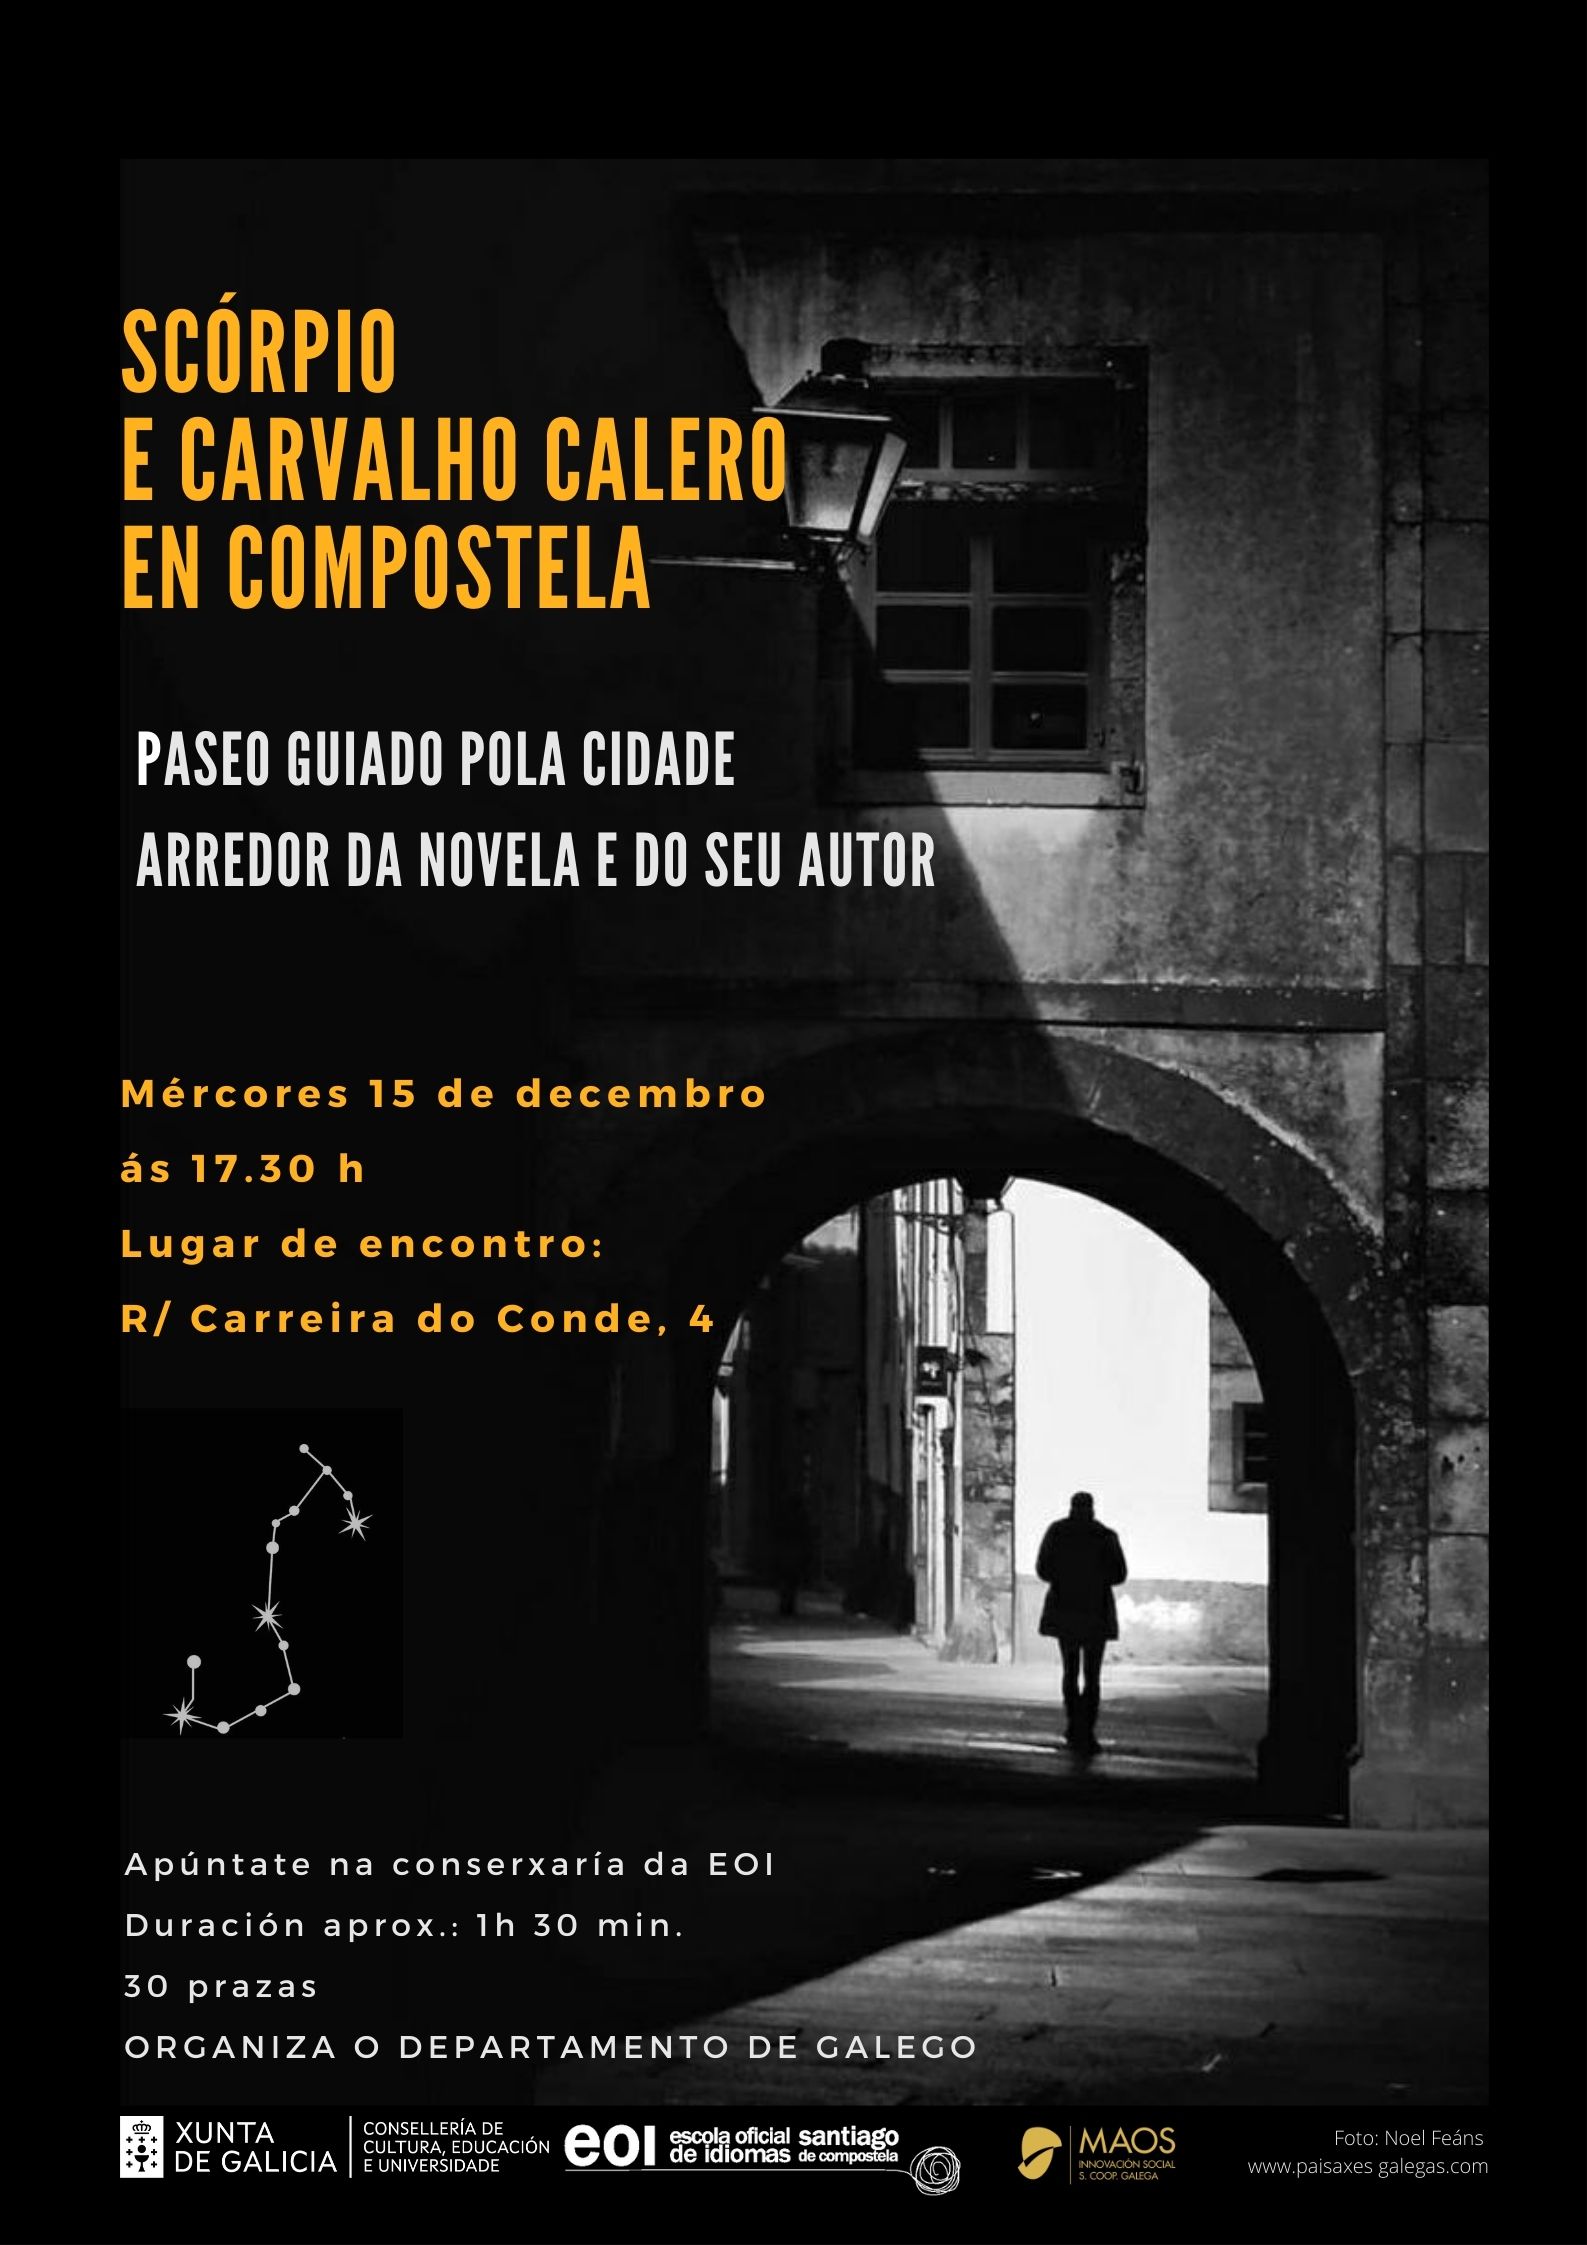 Carvalho Calero